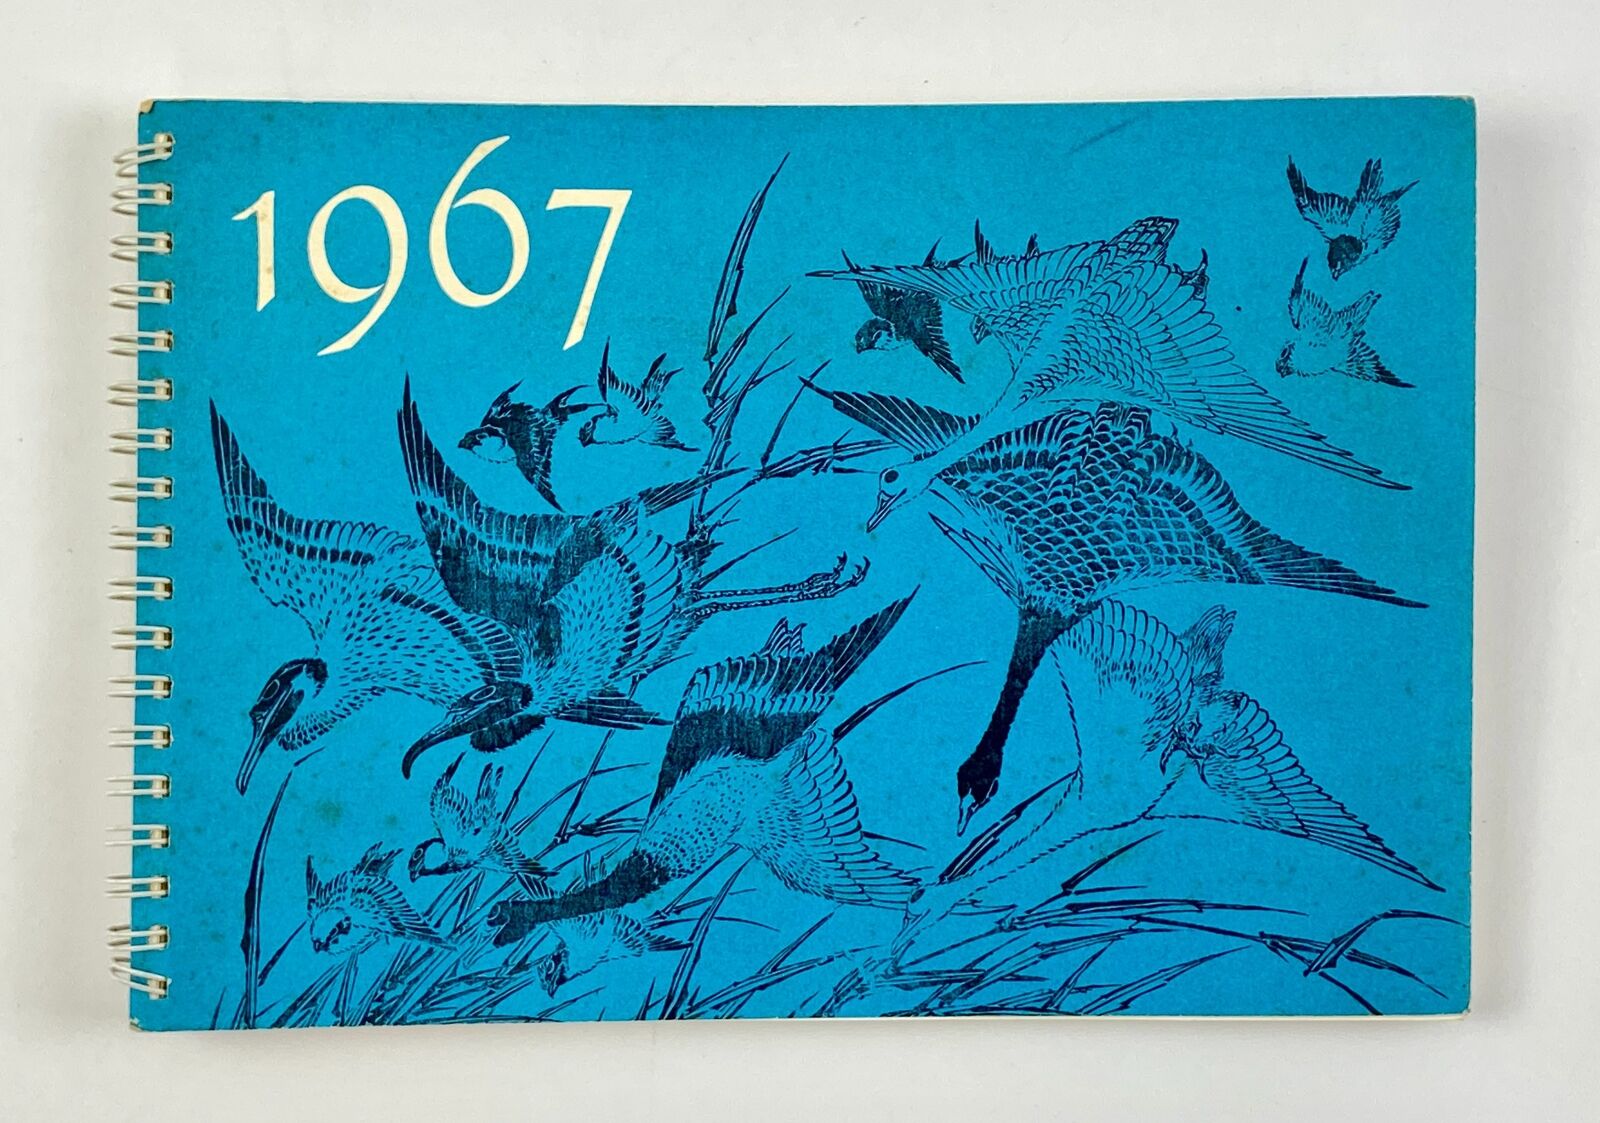 1967 Rare Japanese Calendar Hokusai with Wood Block Prints